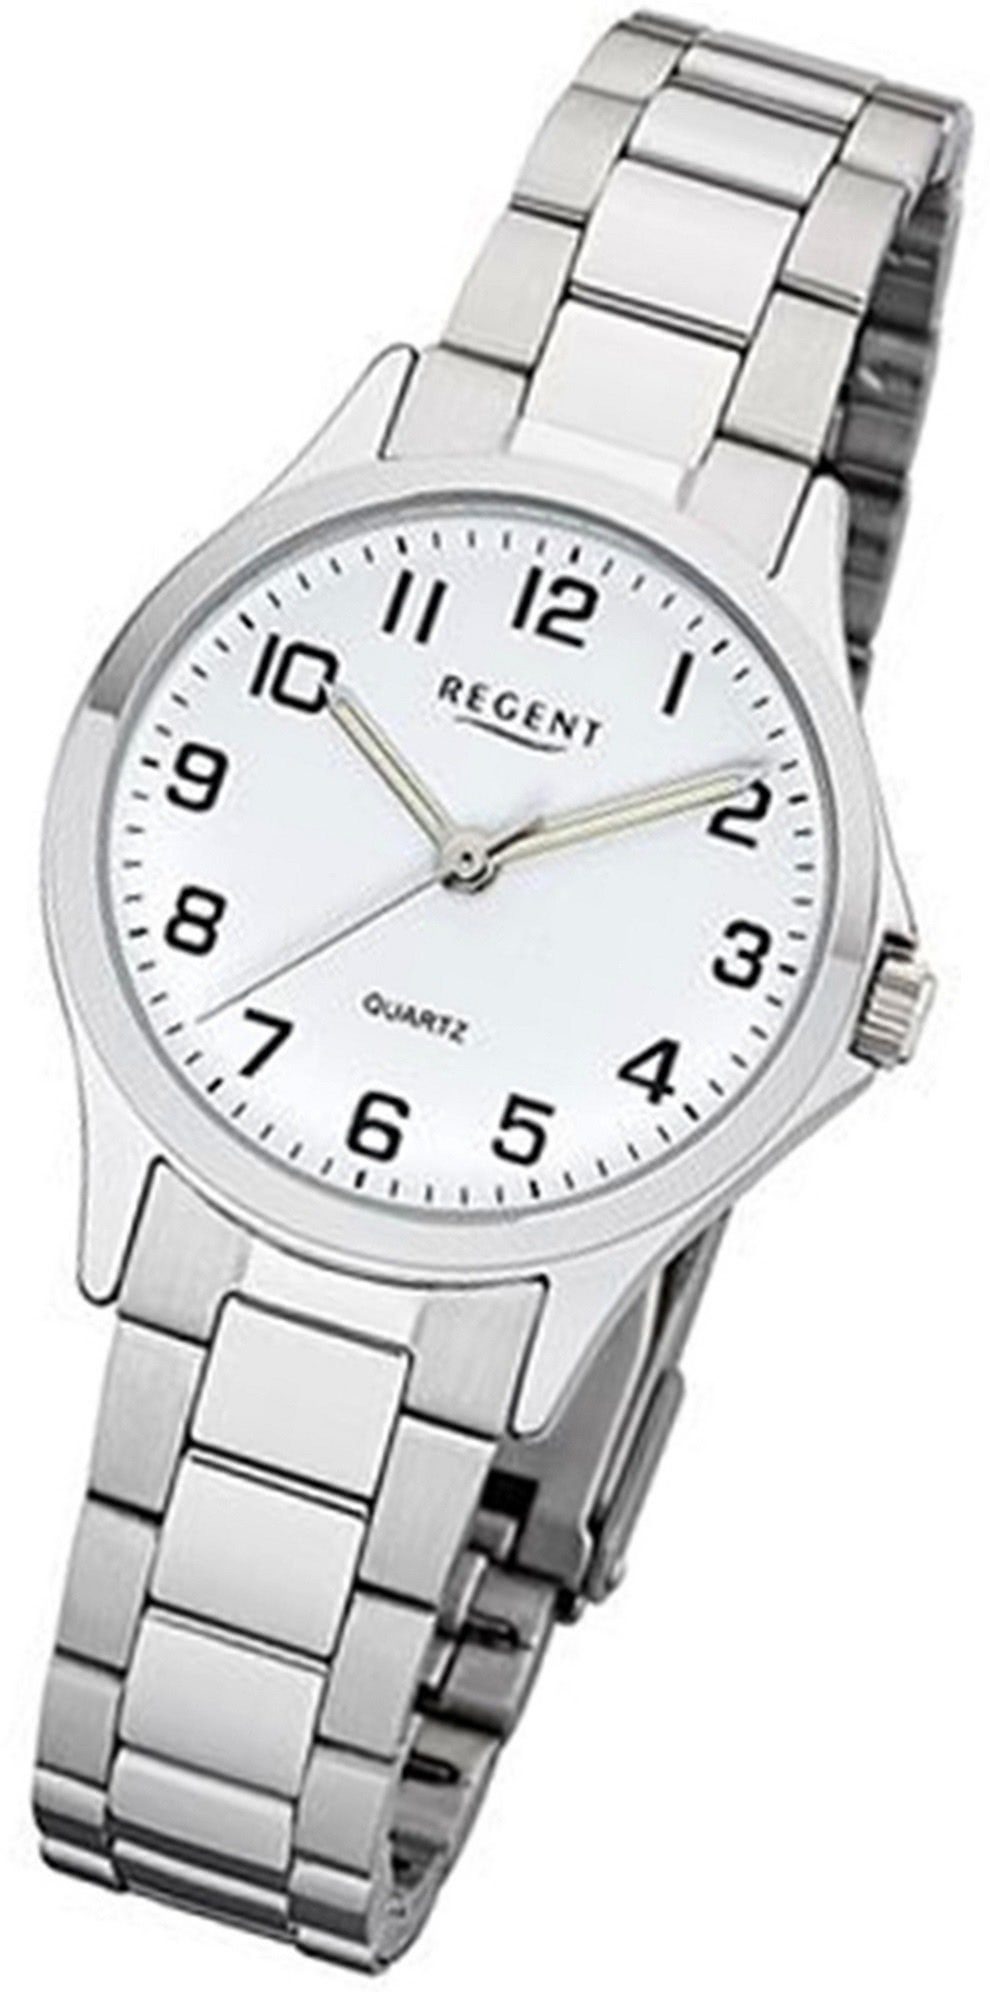 Regent Quarzuhr Regent Metall Damen Uhr 2252410 Analog, Damenuhr Metallarmband silber, rundes Gehäuse, klein (ca. 29mm)